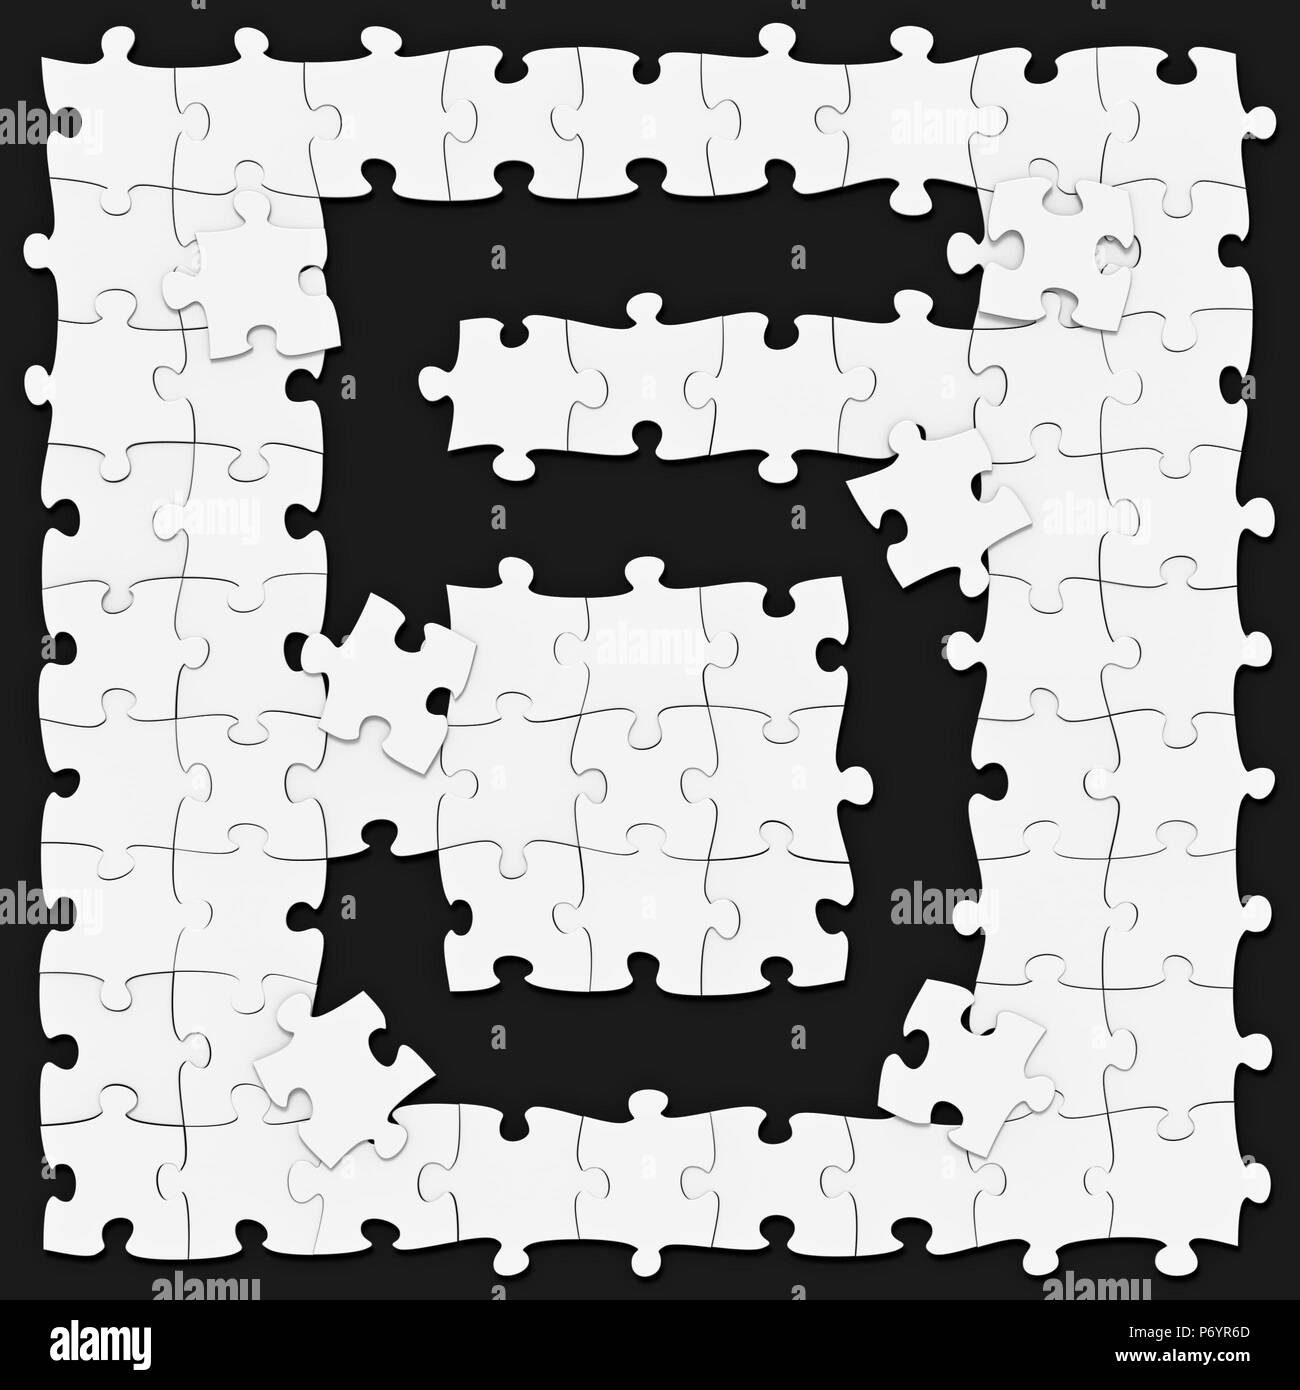 Jigsaw puzzles matemáticos reunidos el dígito 5 o 5 sobre fondo oscuro,  puzzle junta puede ser conectado sin fisuras a lo largo de las fronteras,  de la imagen presentada en 3D Fotografía